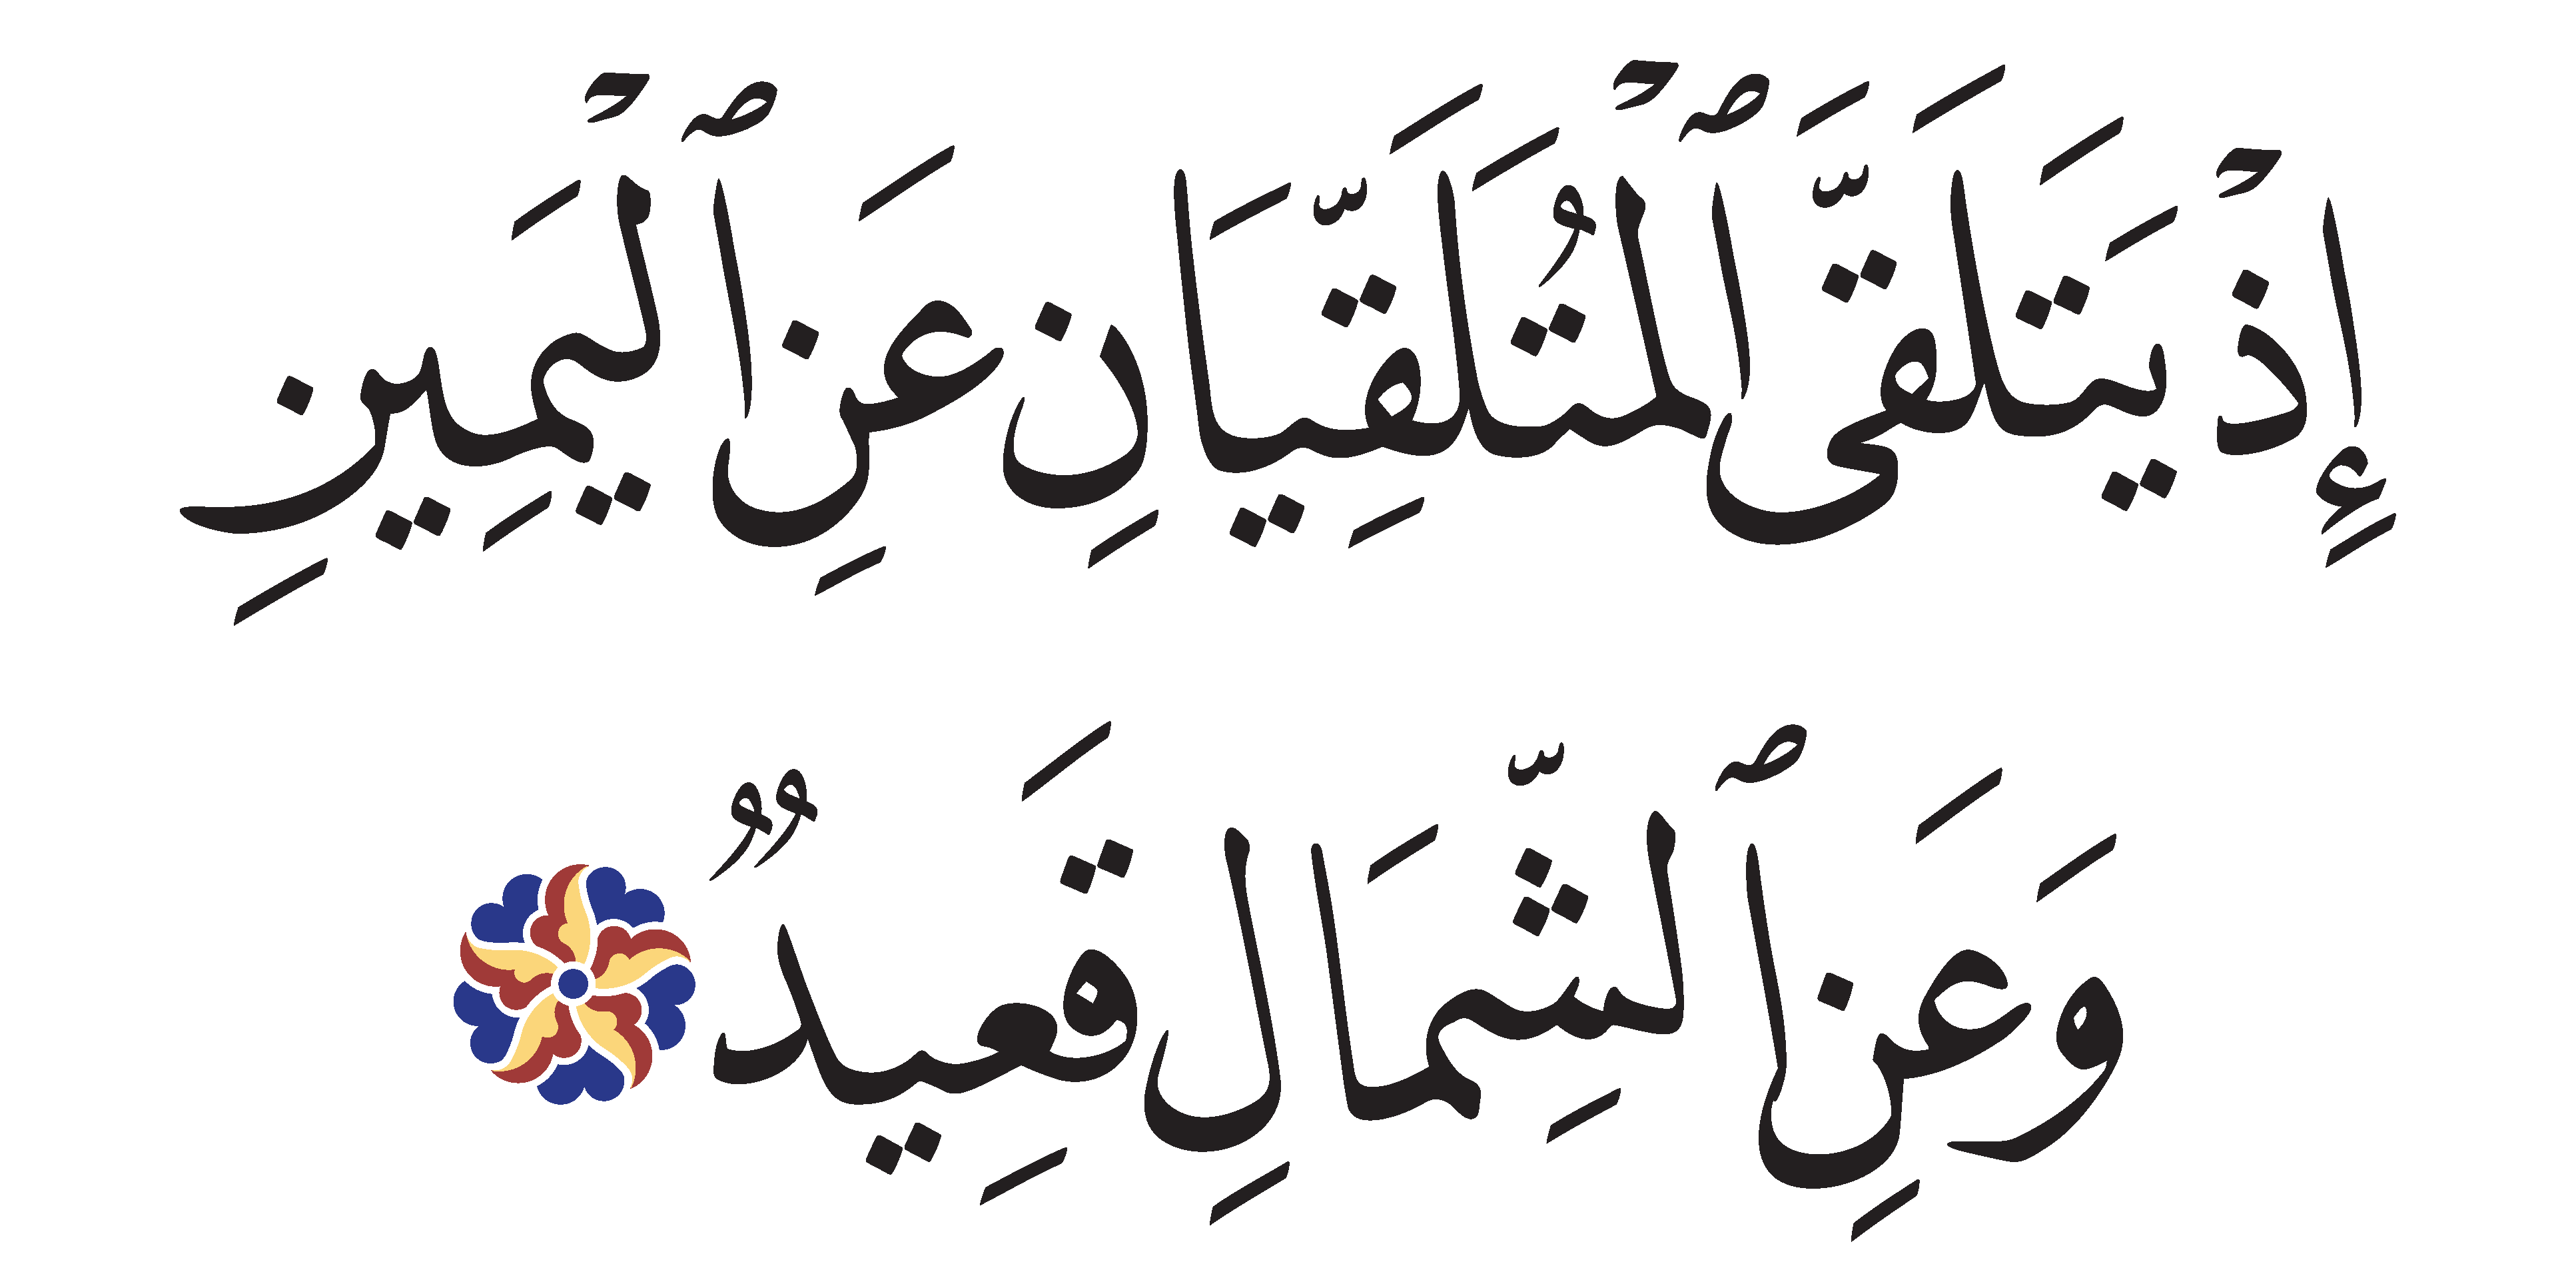 Qaf 50, 17 - Free Islamic Calligraphy